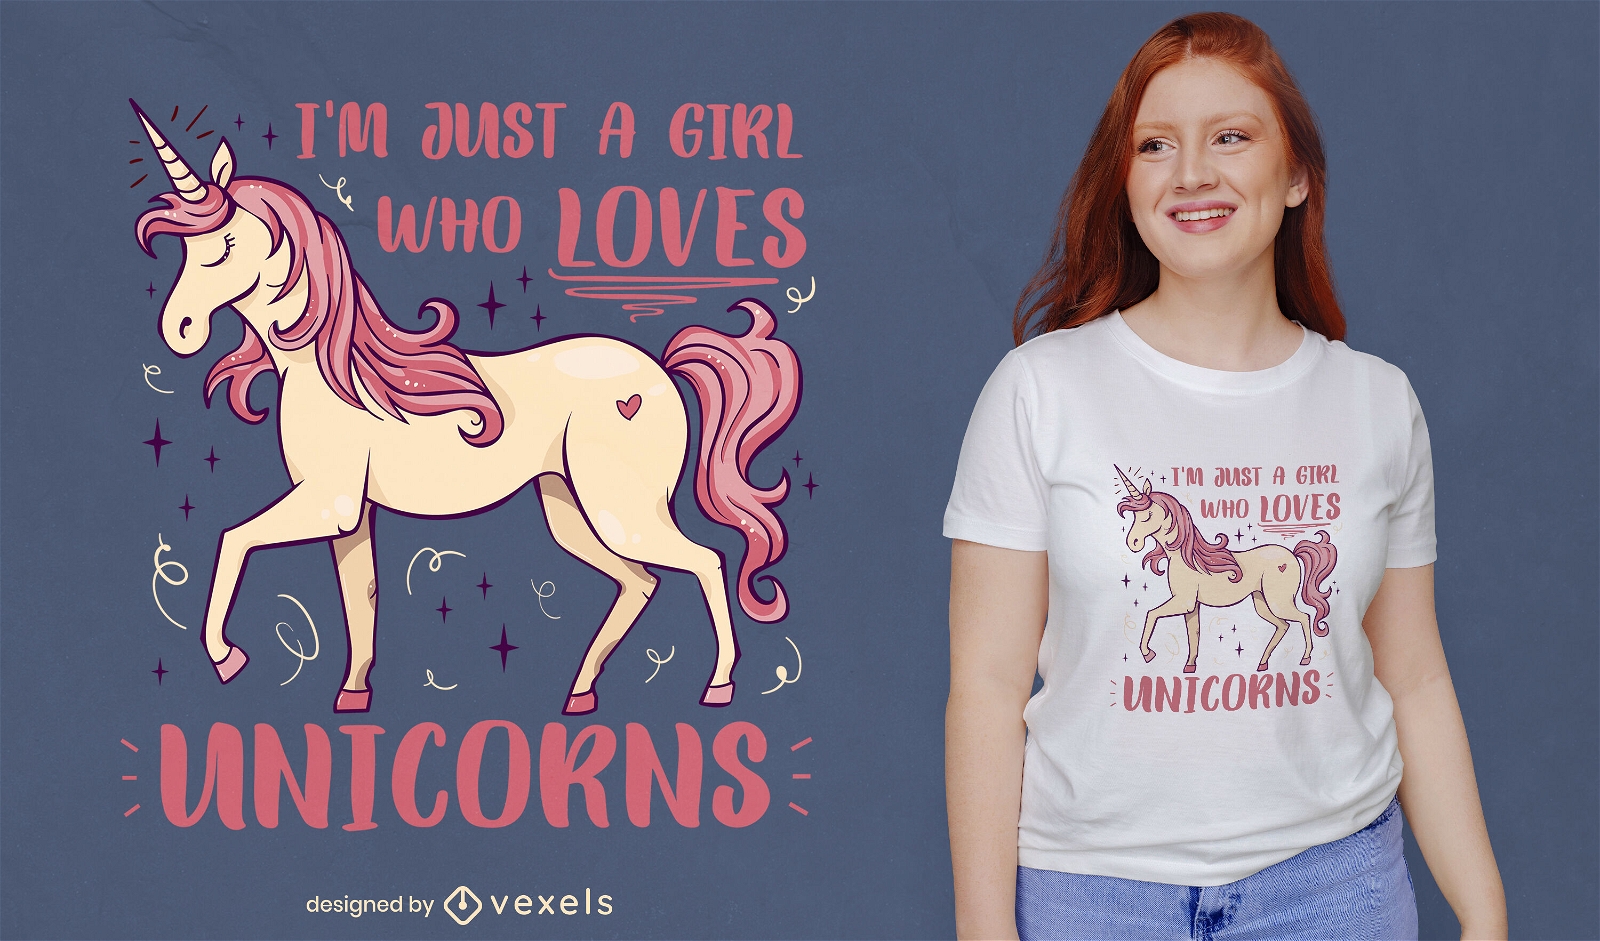 Una chica que ama el dise?o de camisetas de unicornios.